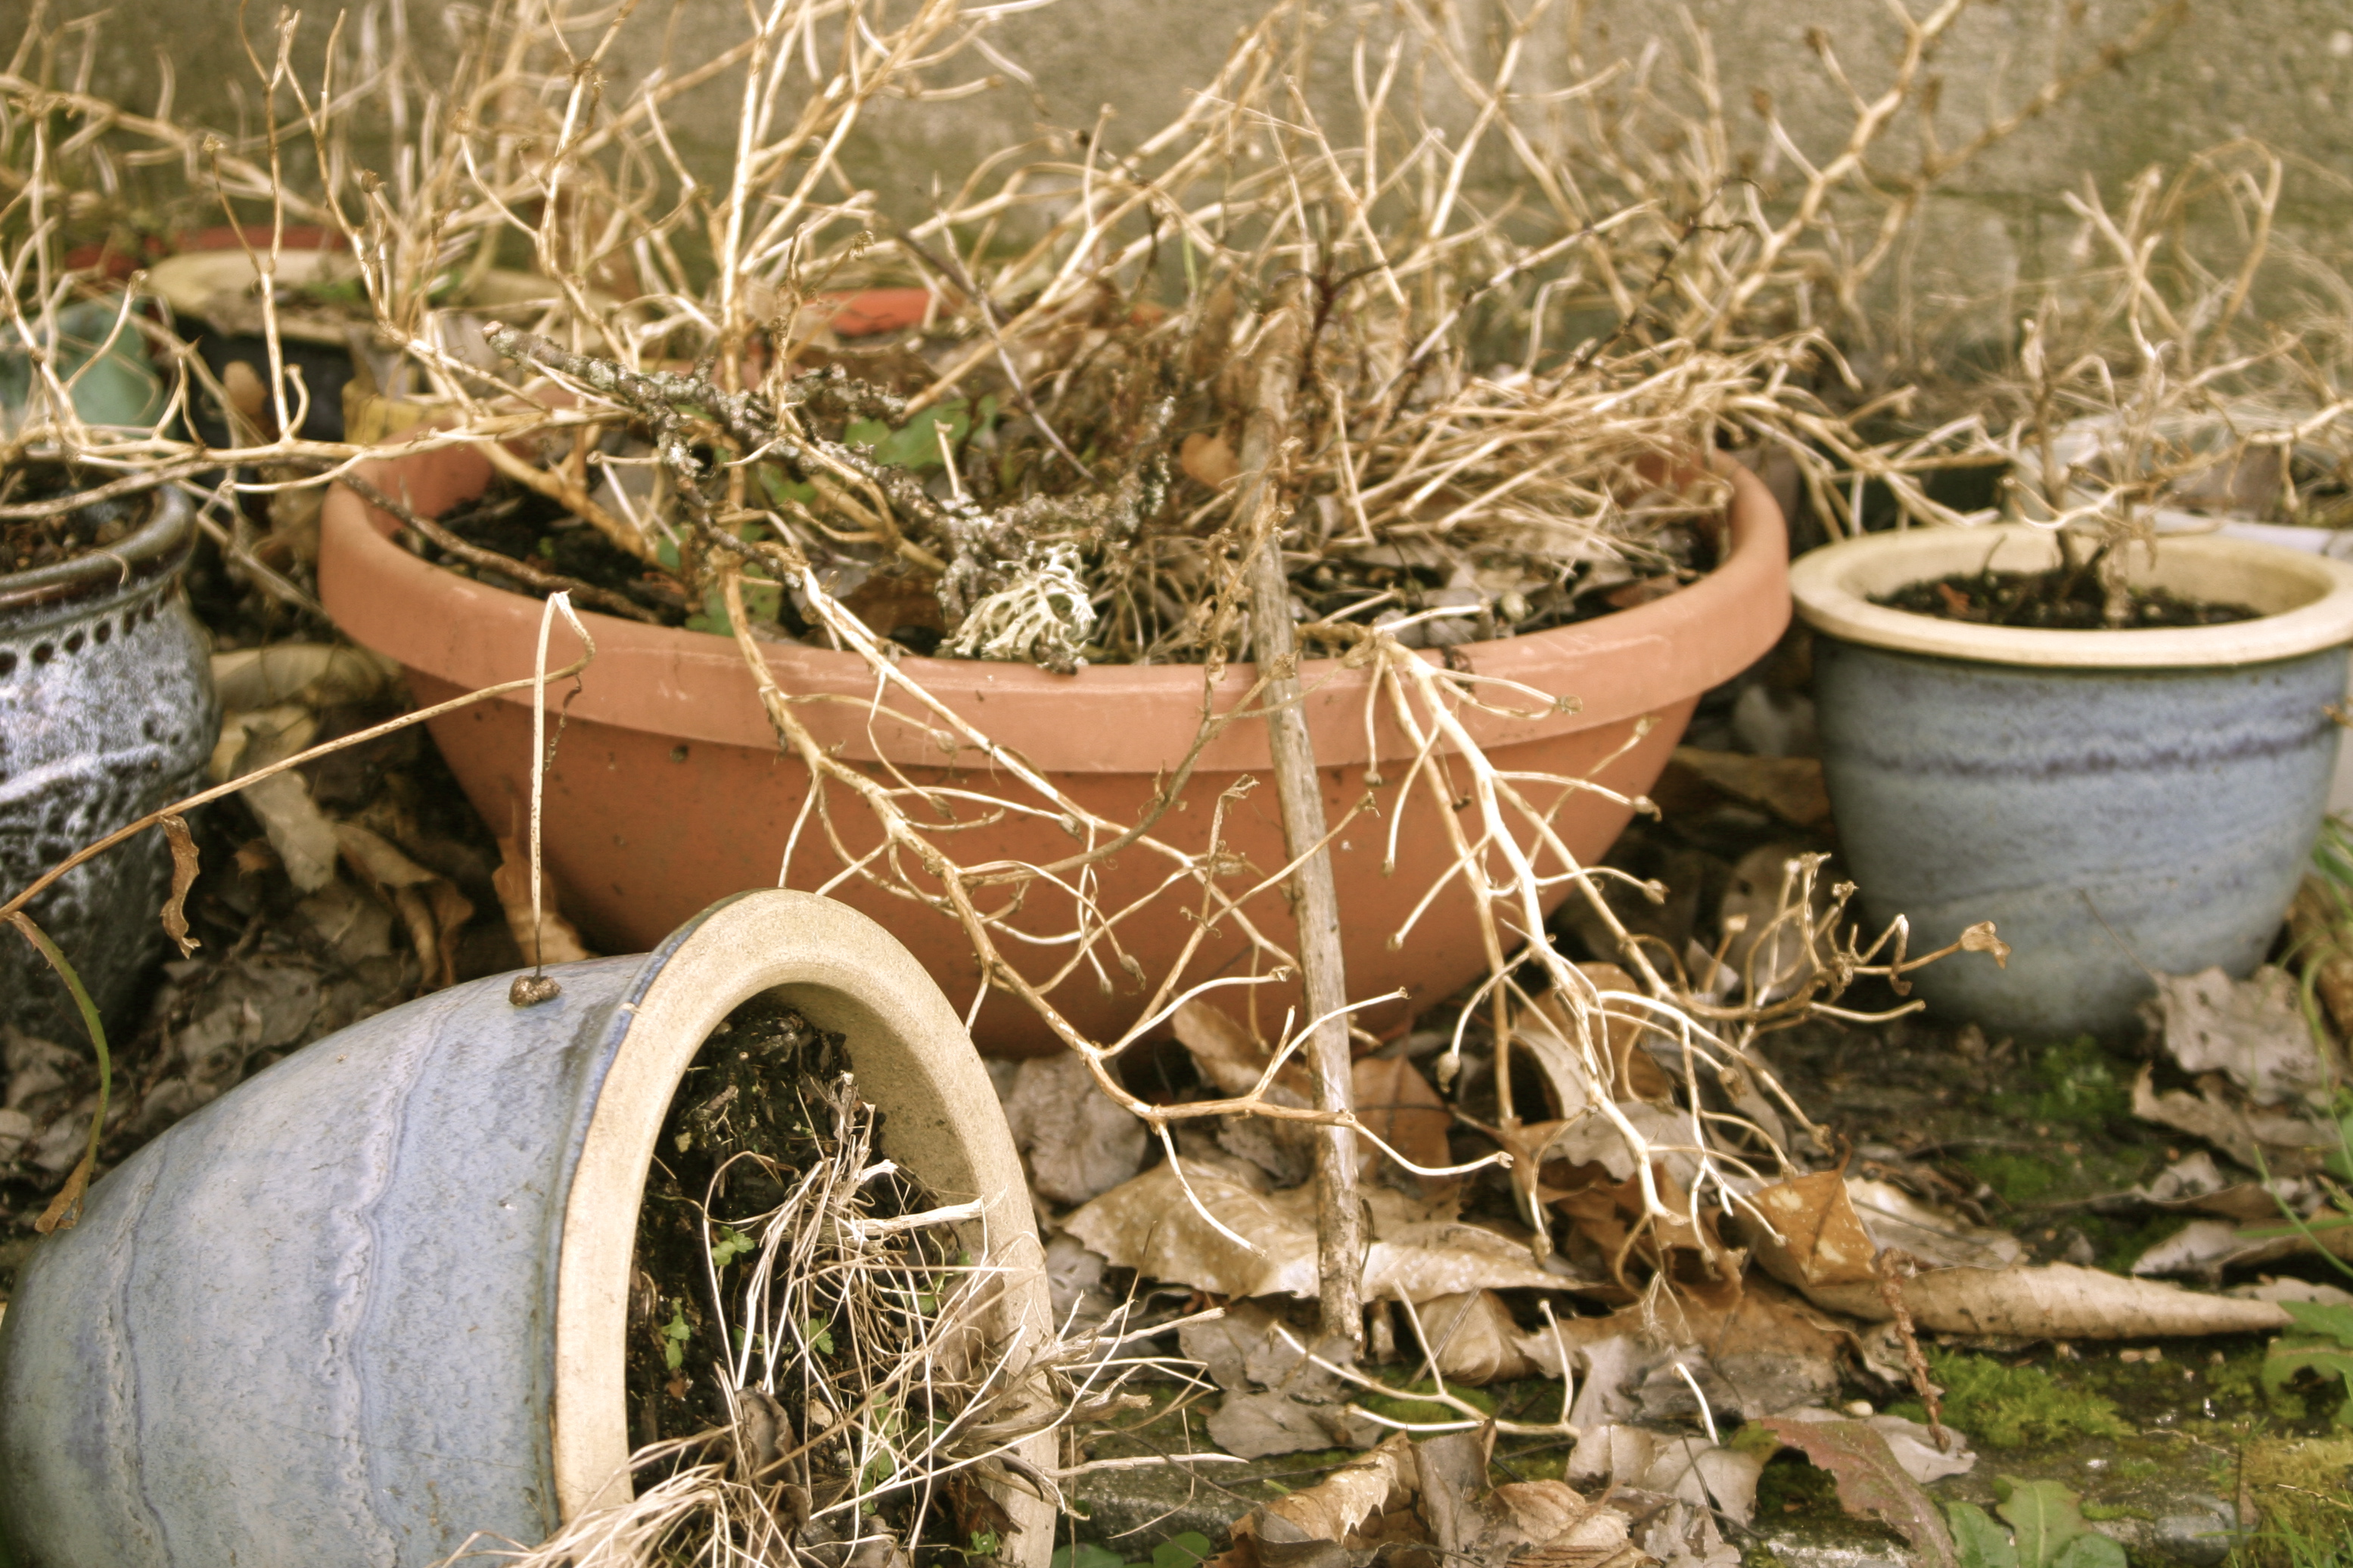 File:Dead plant in pots.jpg - Wikimedia Commons